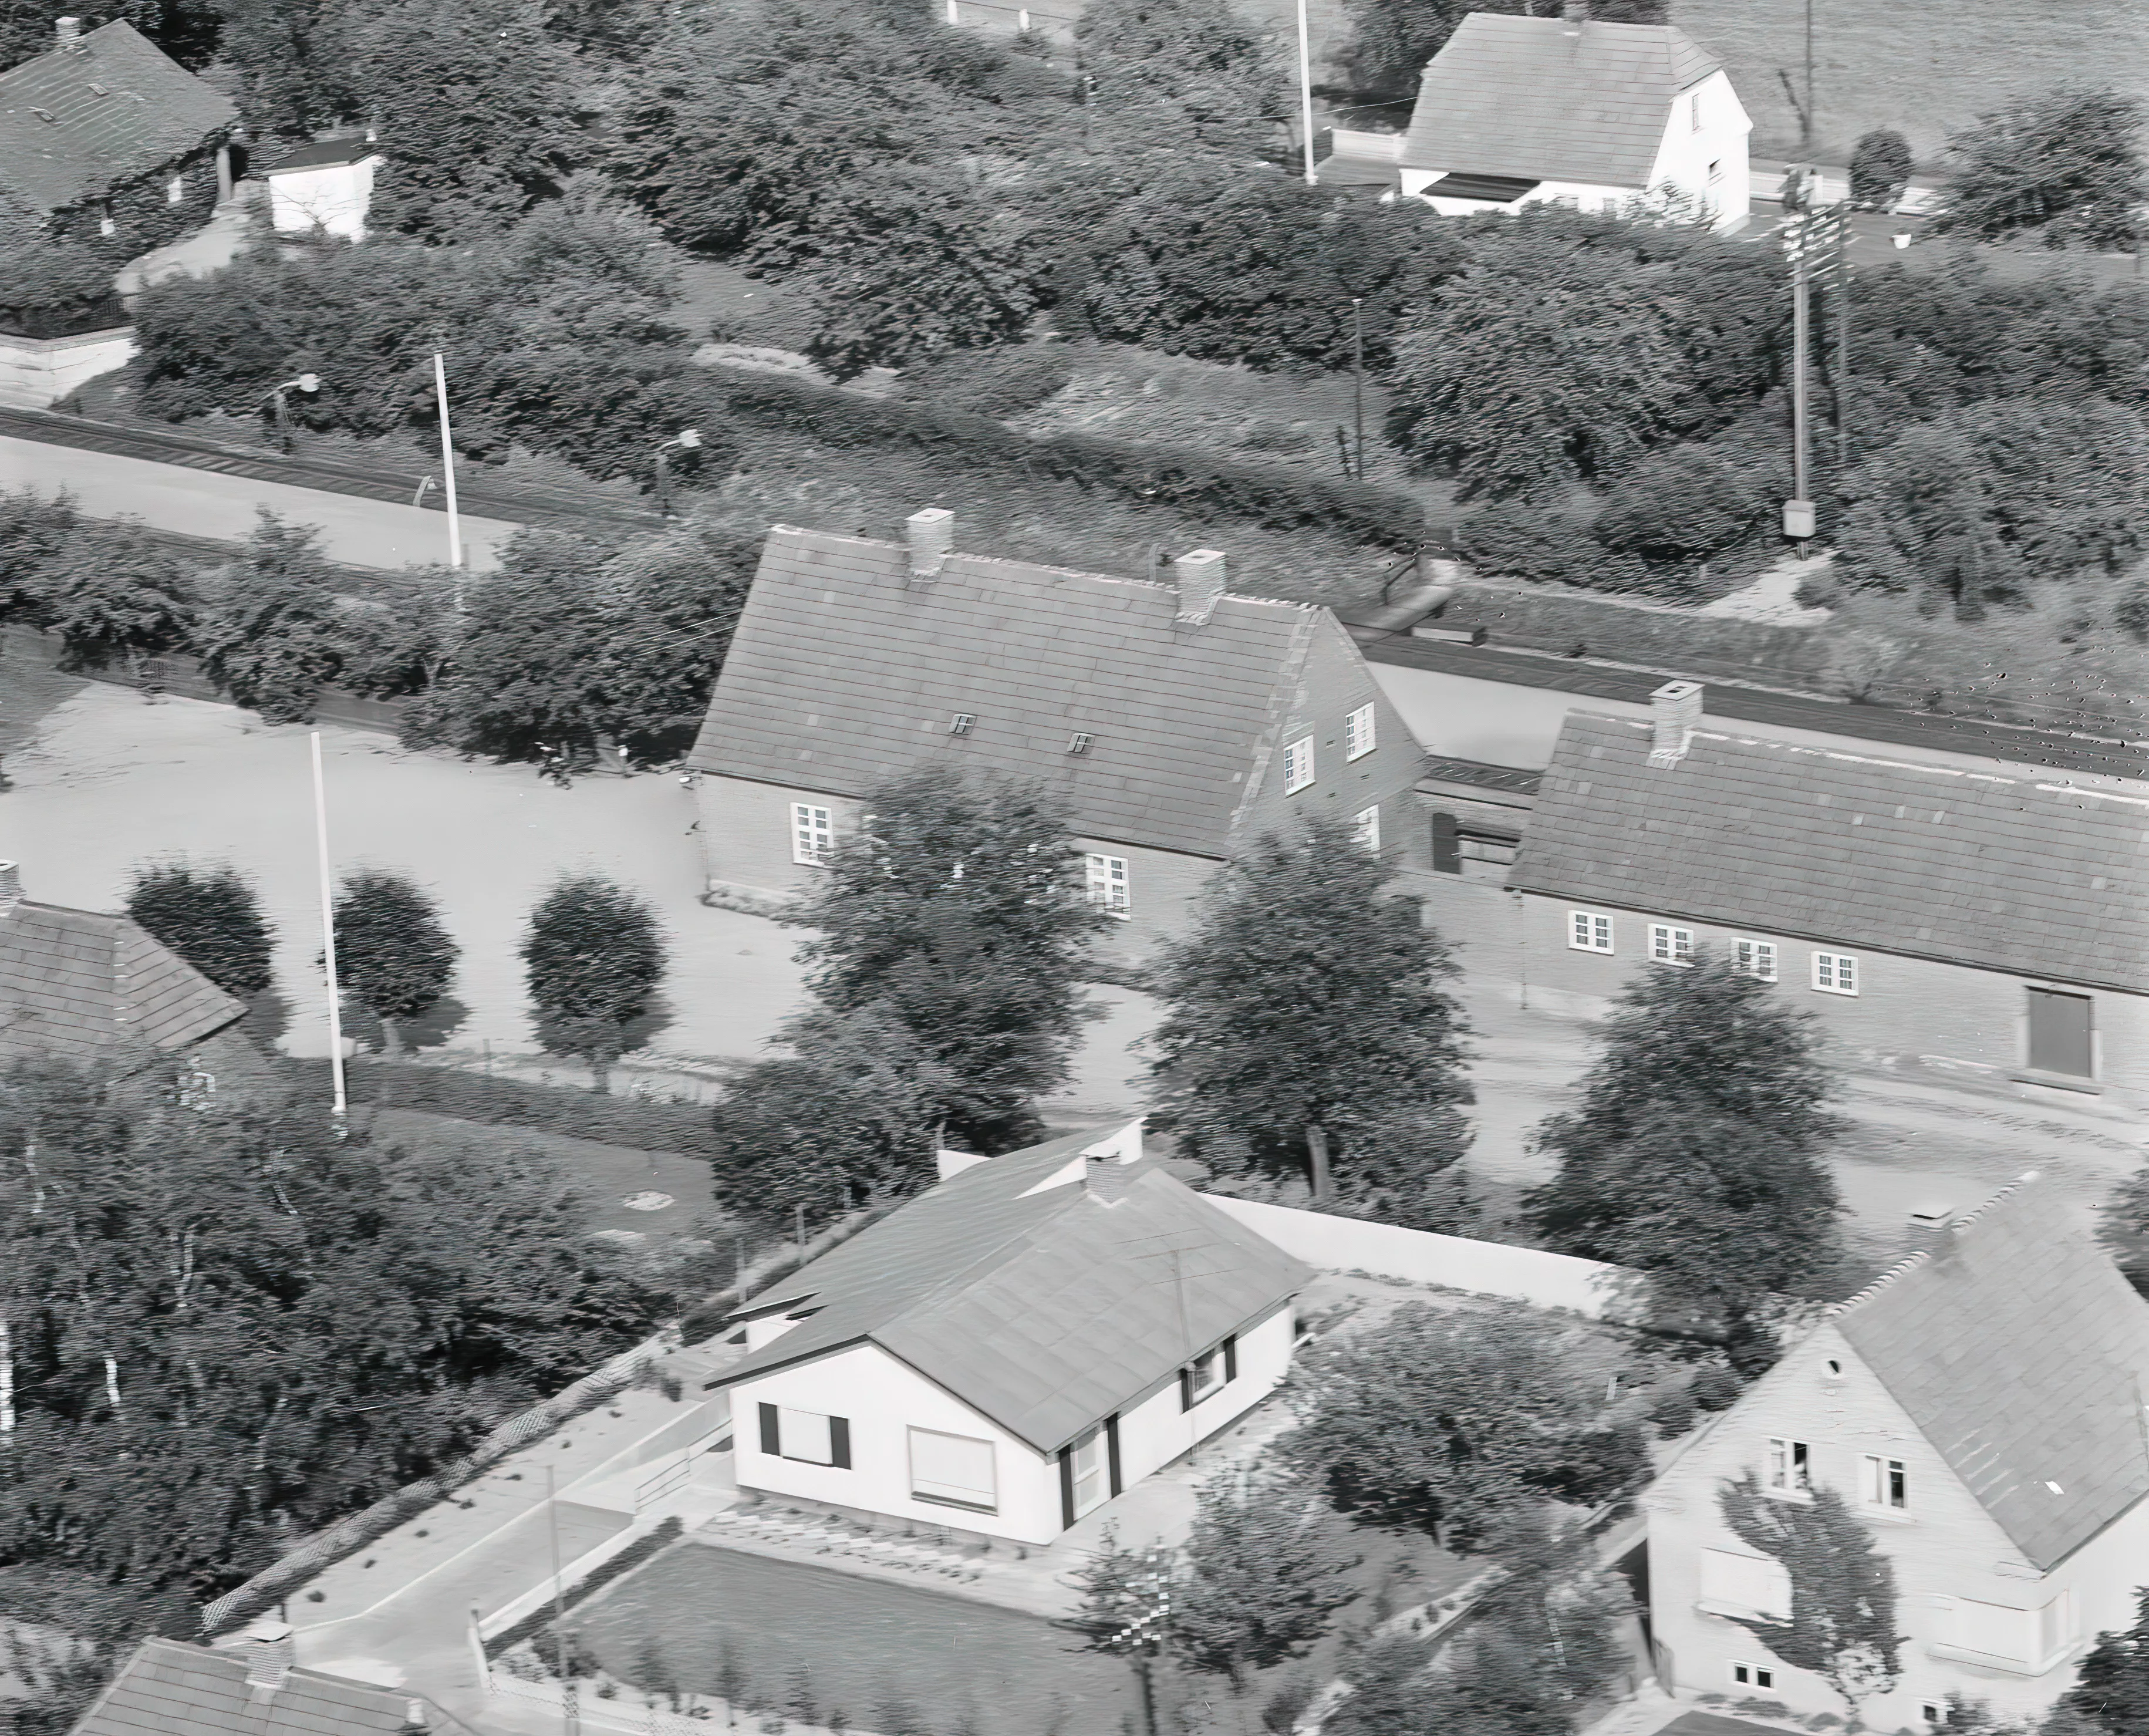 Billede af Bråby Station, som blev nedsat til trinbræt i 1960.